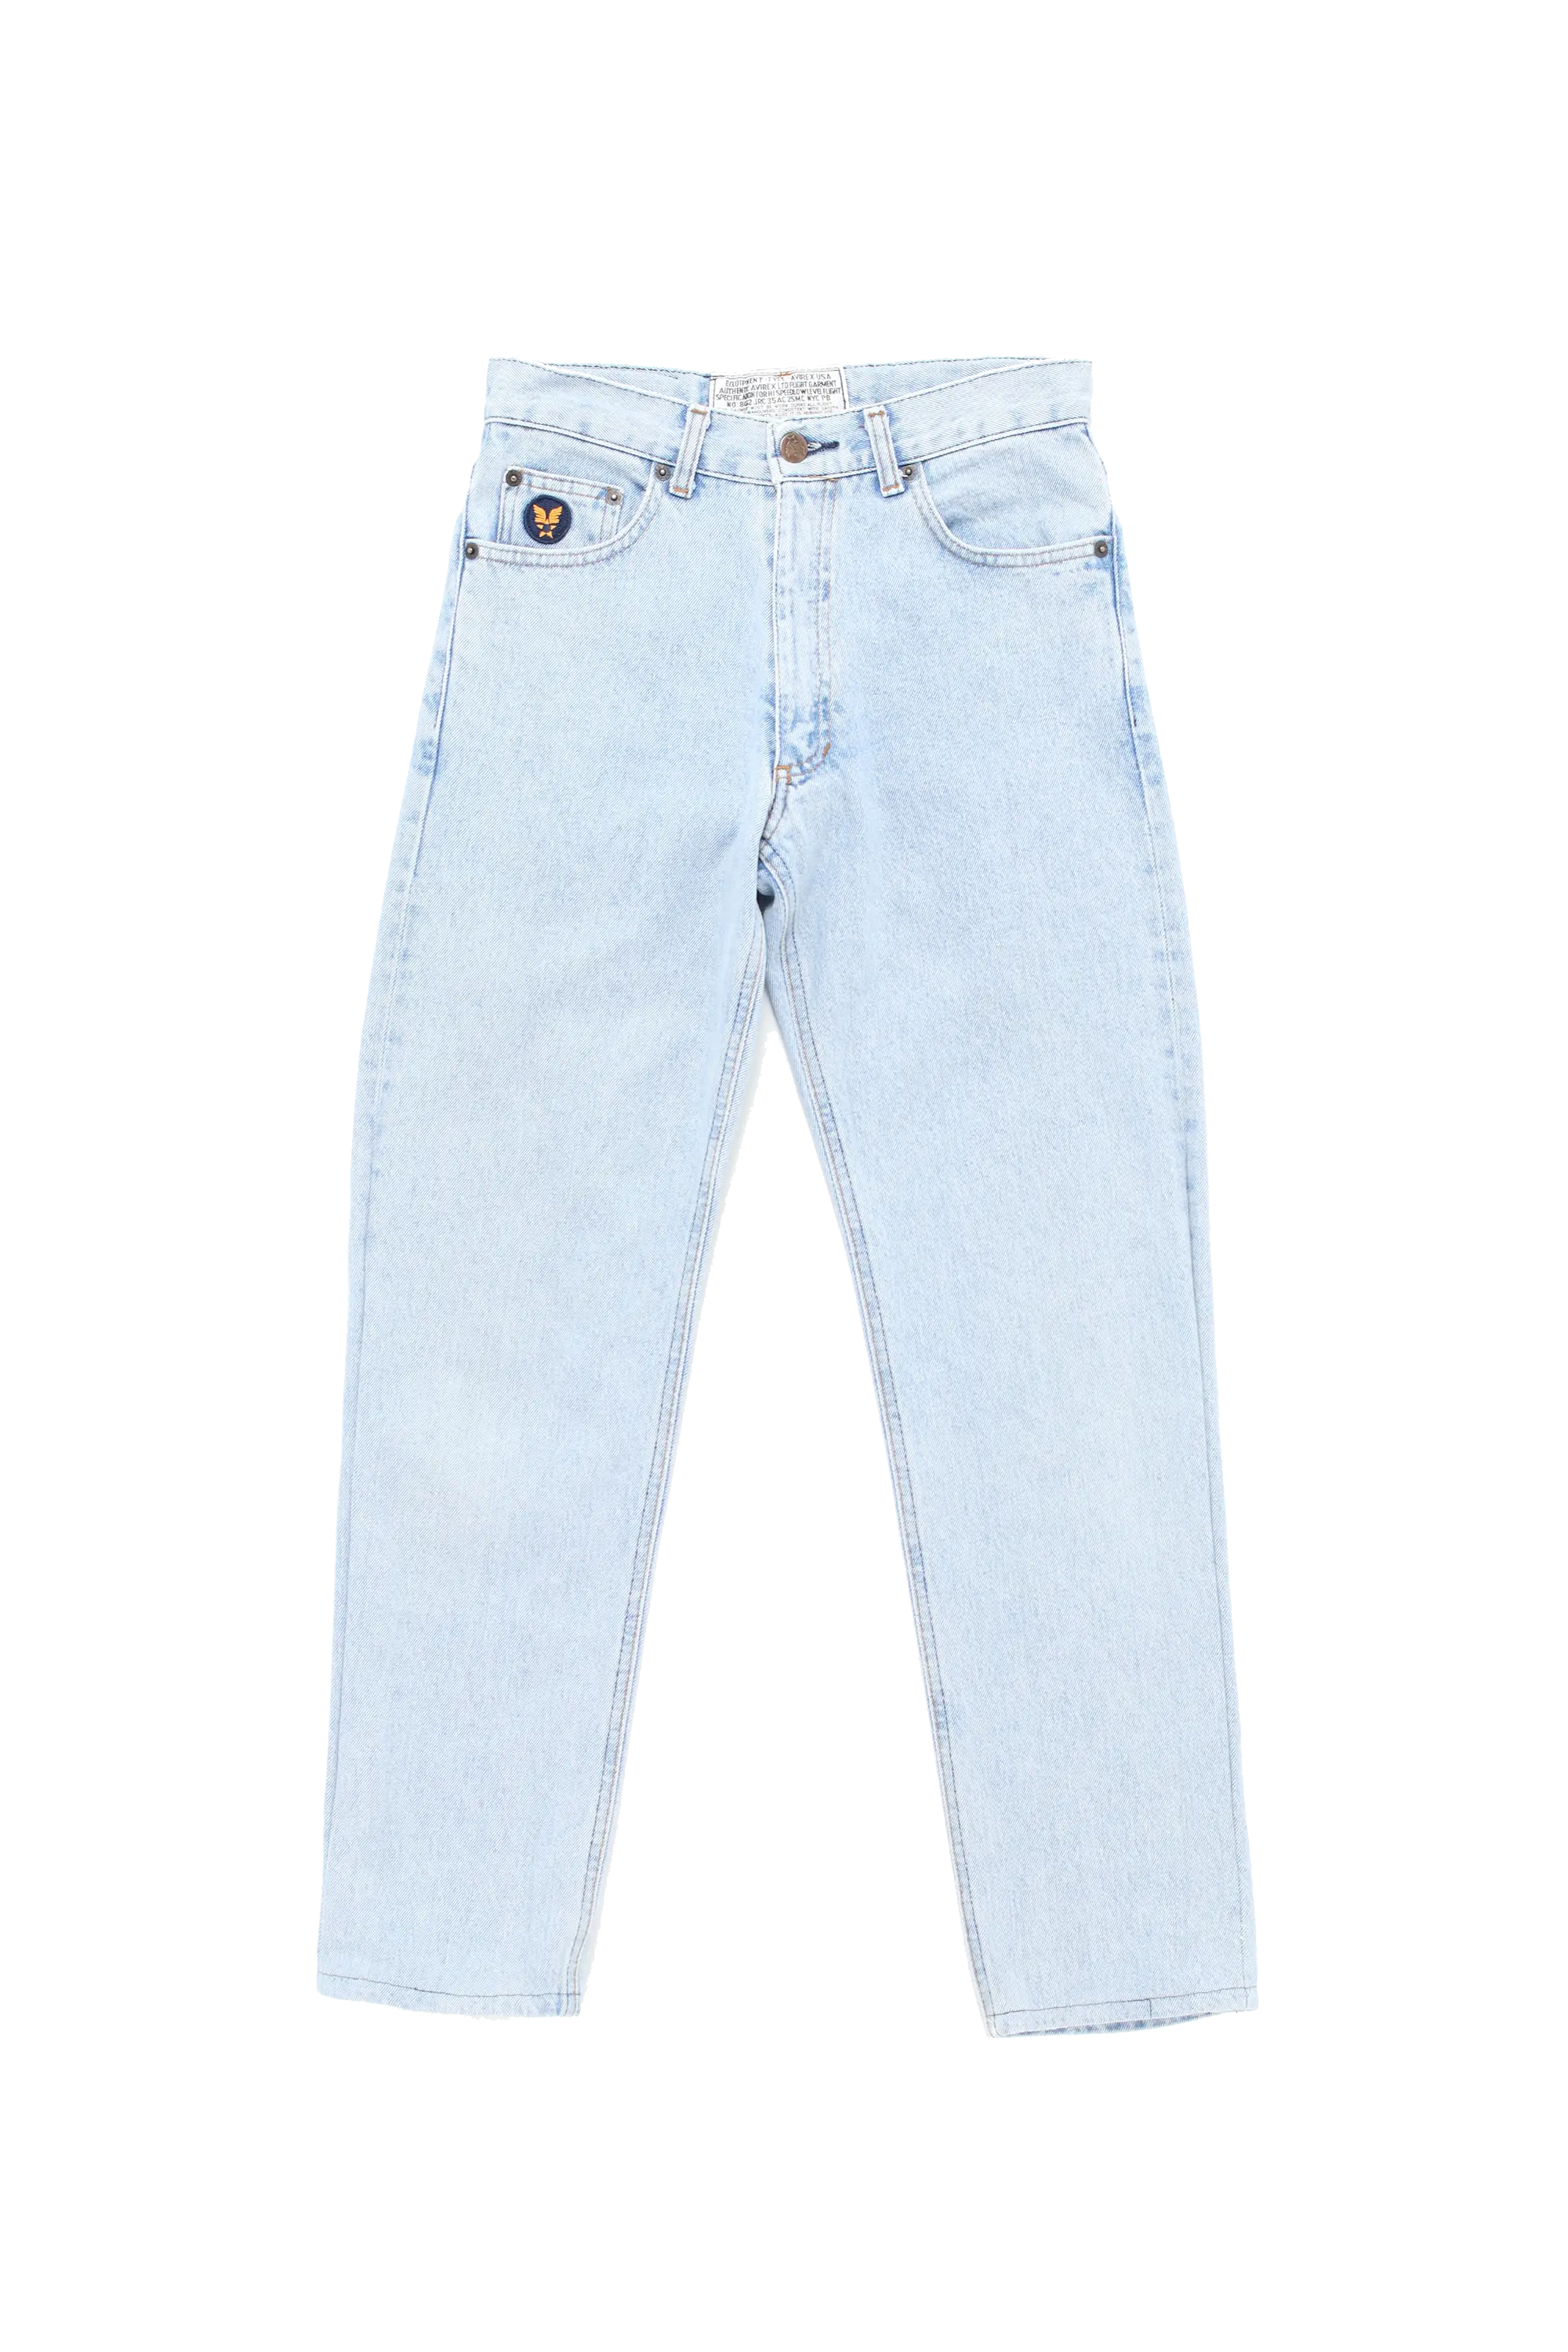 Avirex Blue Jeans (w)